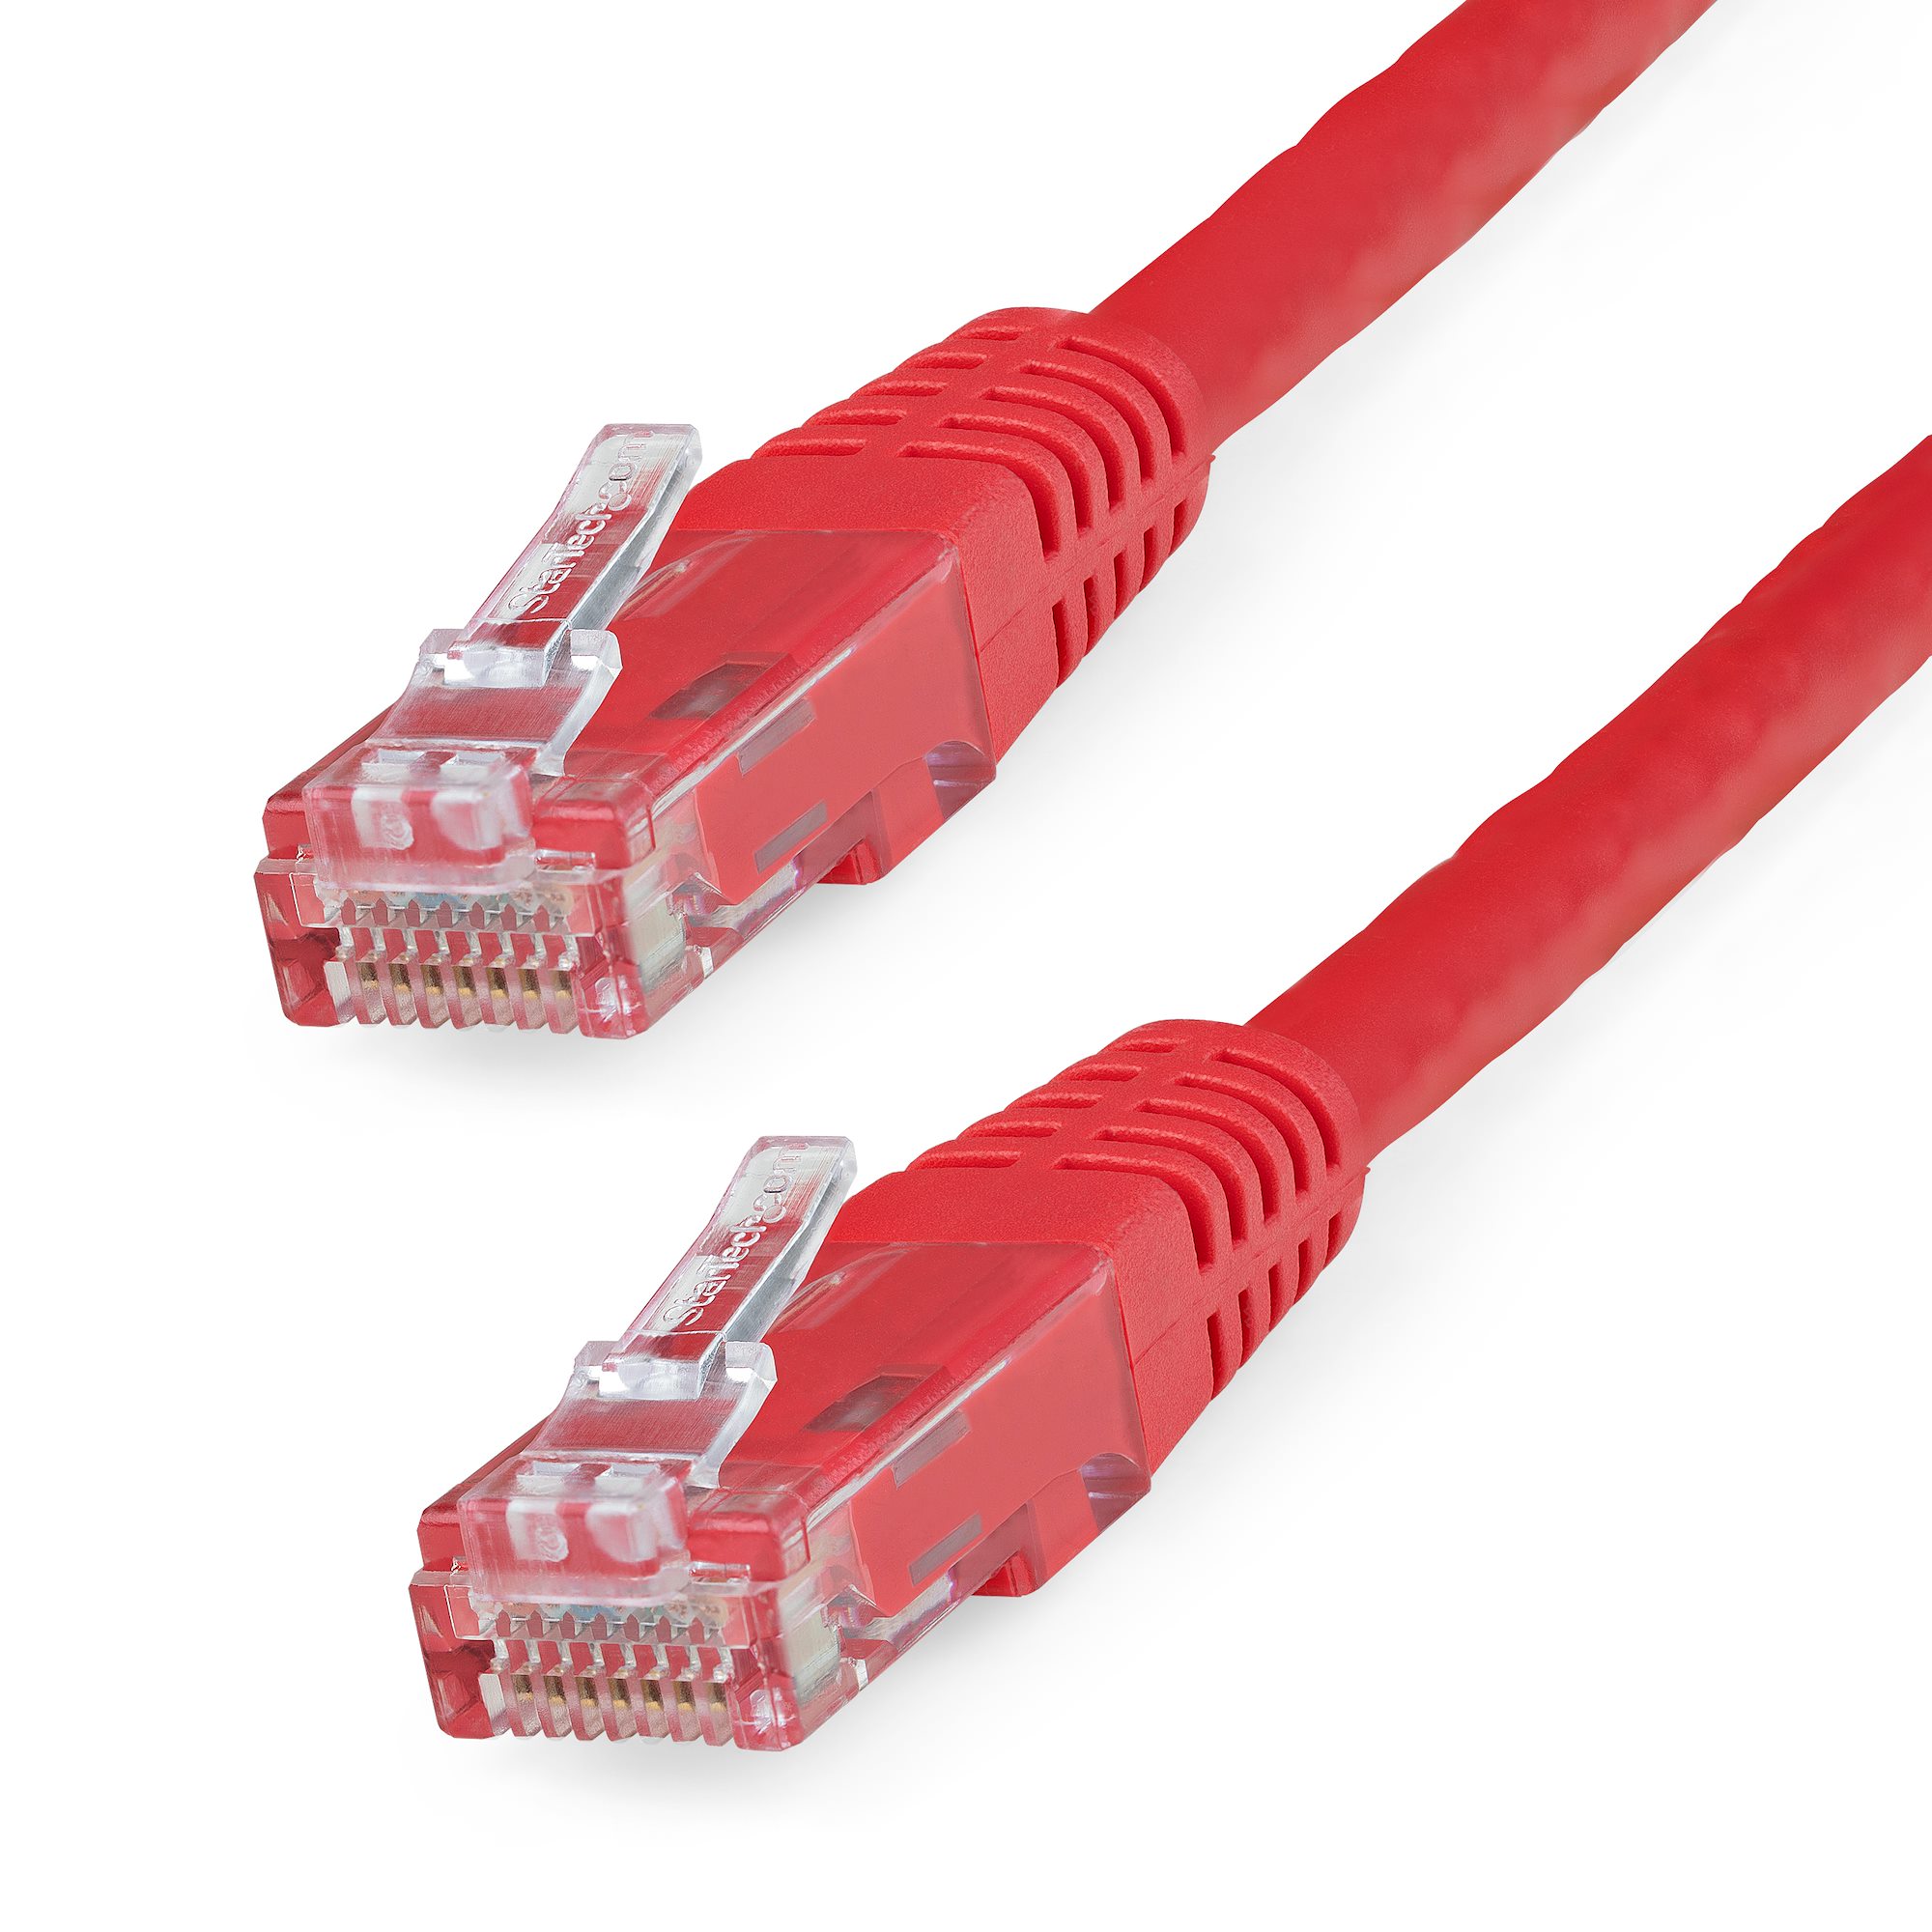 5m Purple Ethernet Cable Cat5e RJ45 Home Office Network Patch Lead 100% Copper 